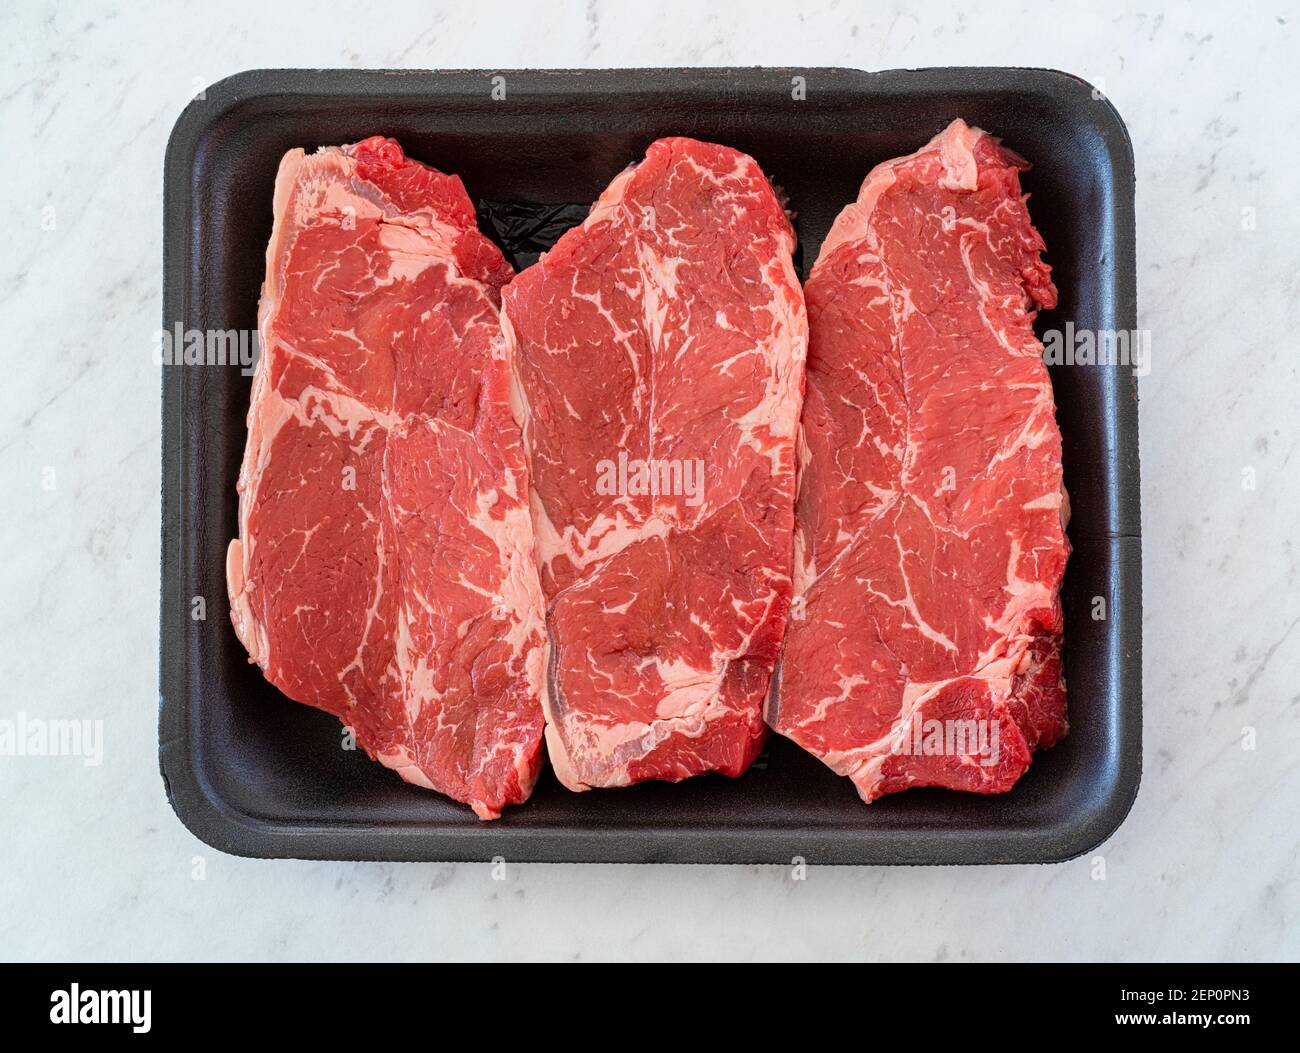 Steak de striploin de bœuf marbré sur un plateau en mousse de polystyrène d'épicerie Banque D'Images